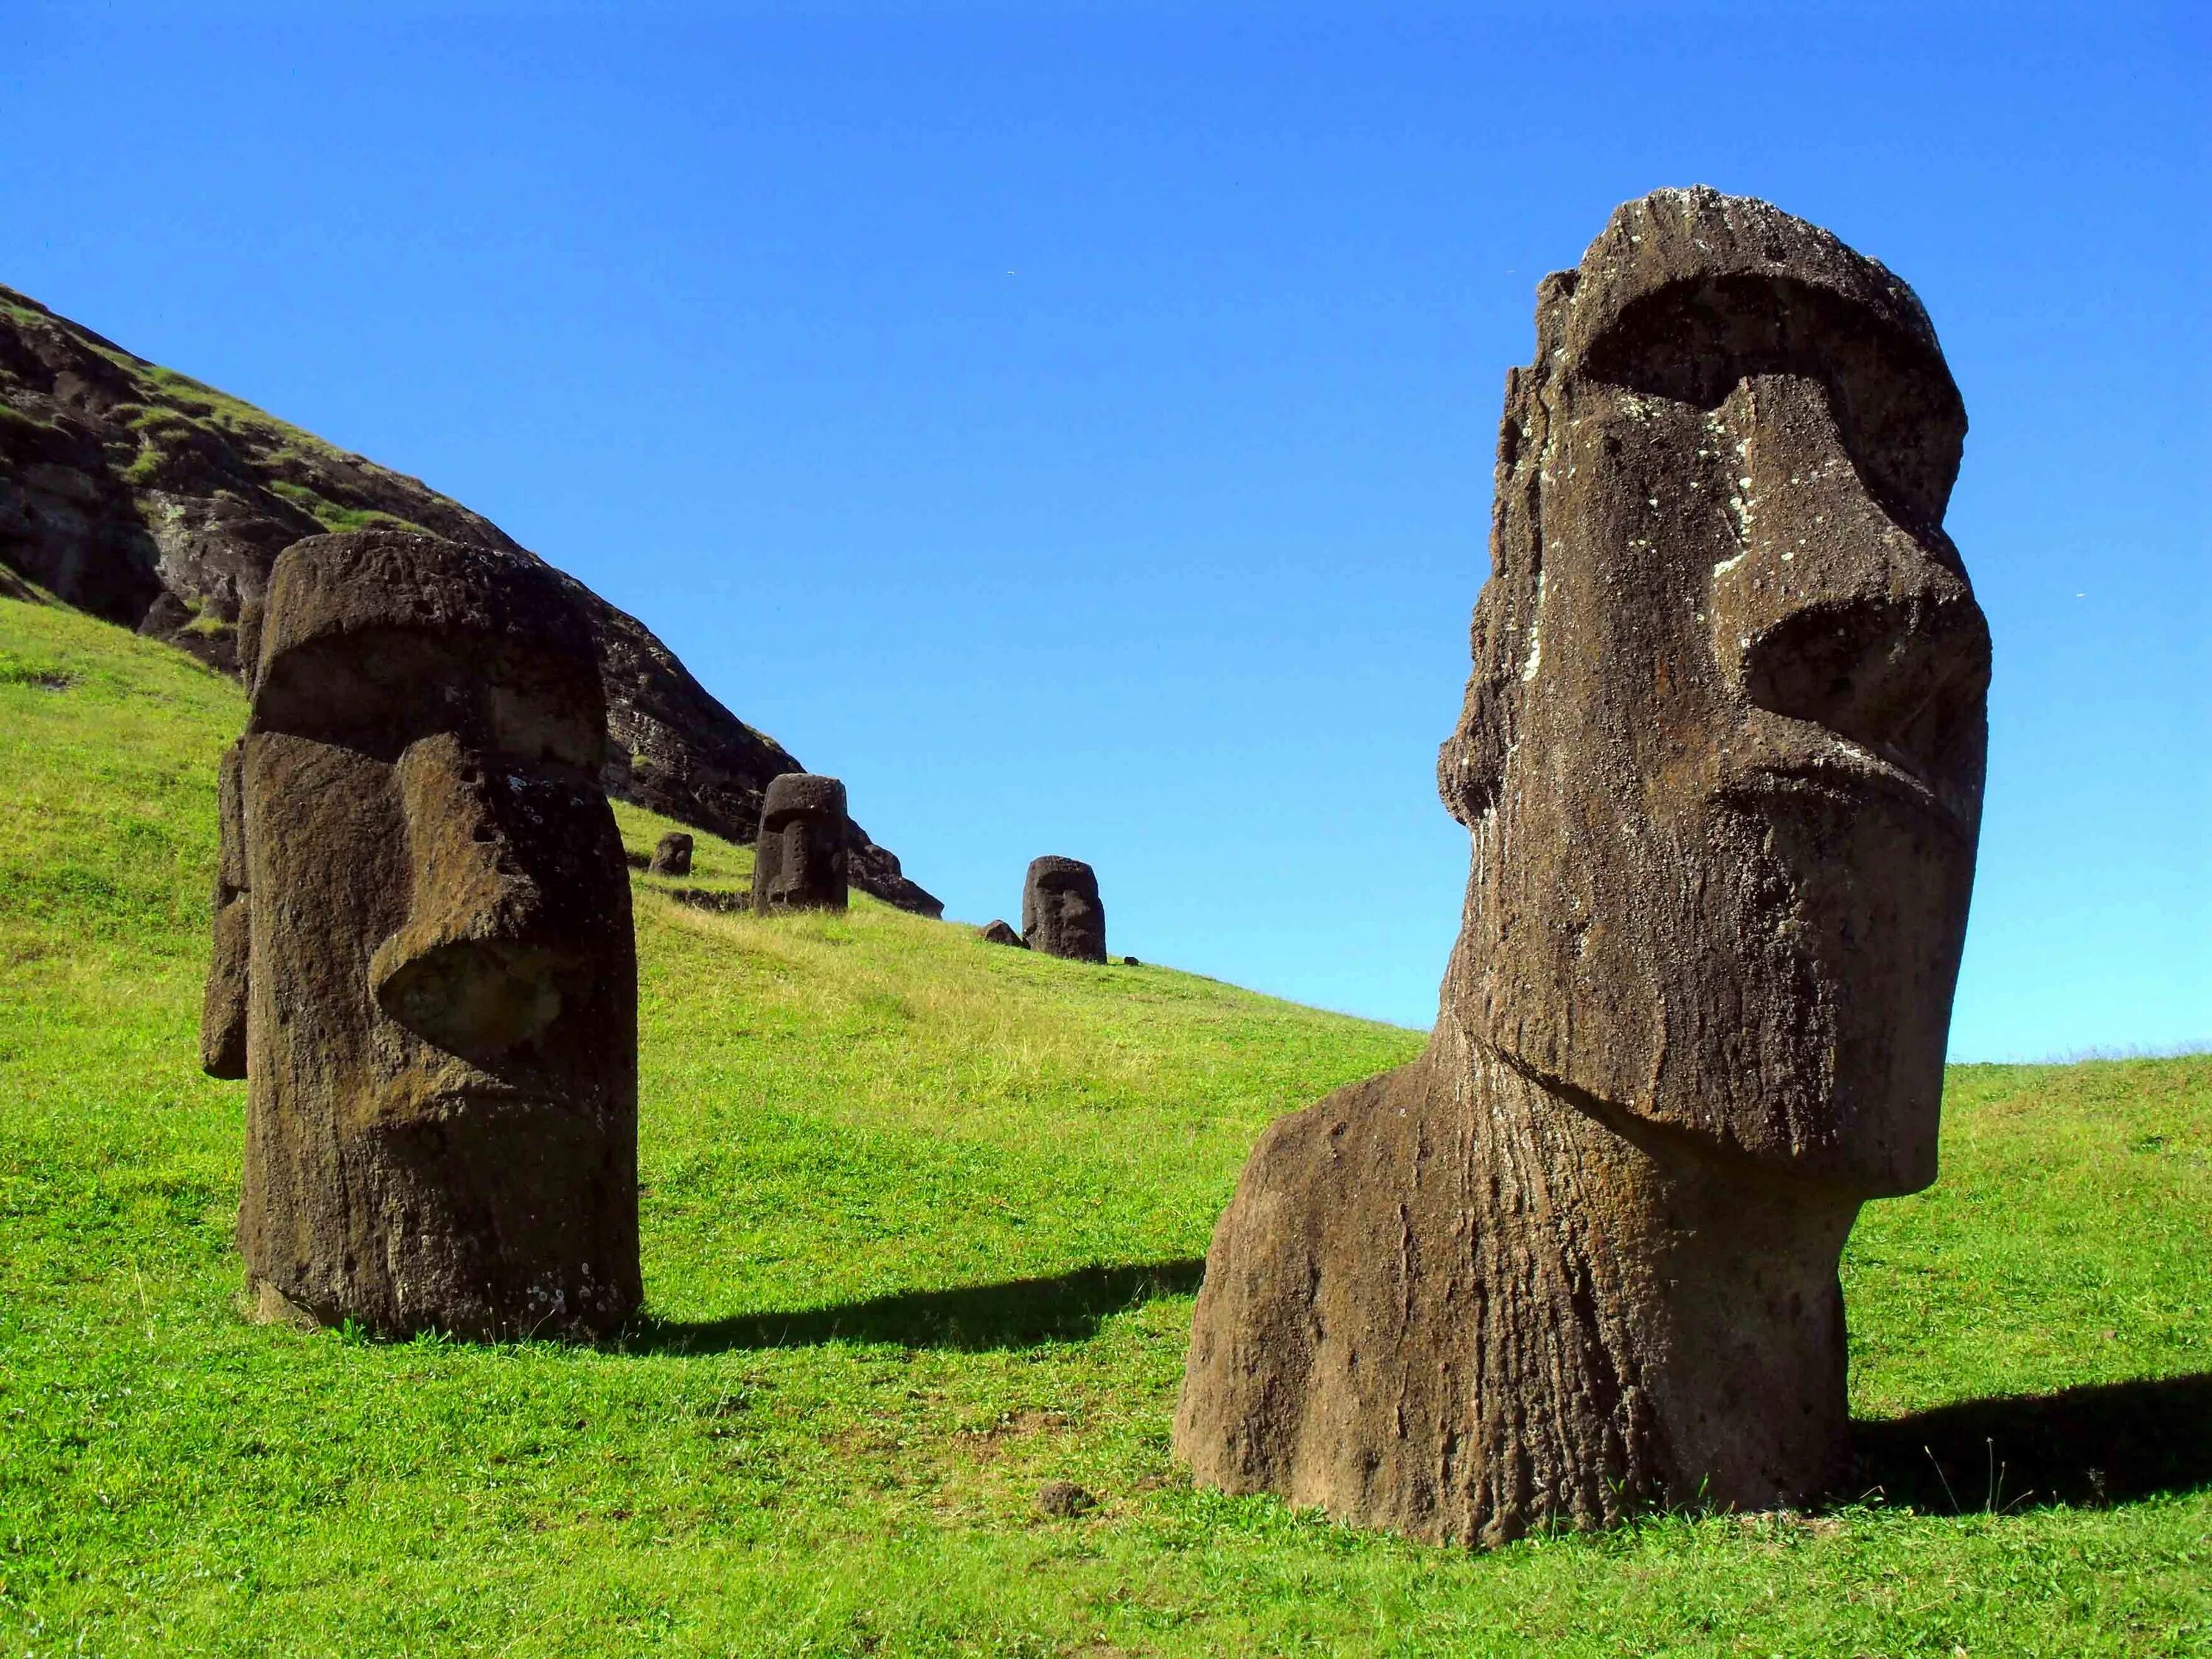 Моаи (статуи острова Пасхи), Чили. Каменные статуи Моаи остров Пасхи Чили. Истуканы Рапа-Нуи остров Пасхи. Статуи Моаи в Чили. Земли которые не разгаданы